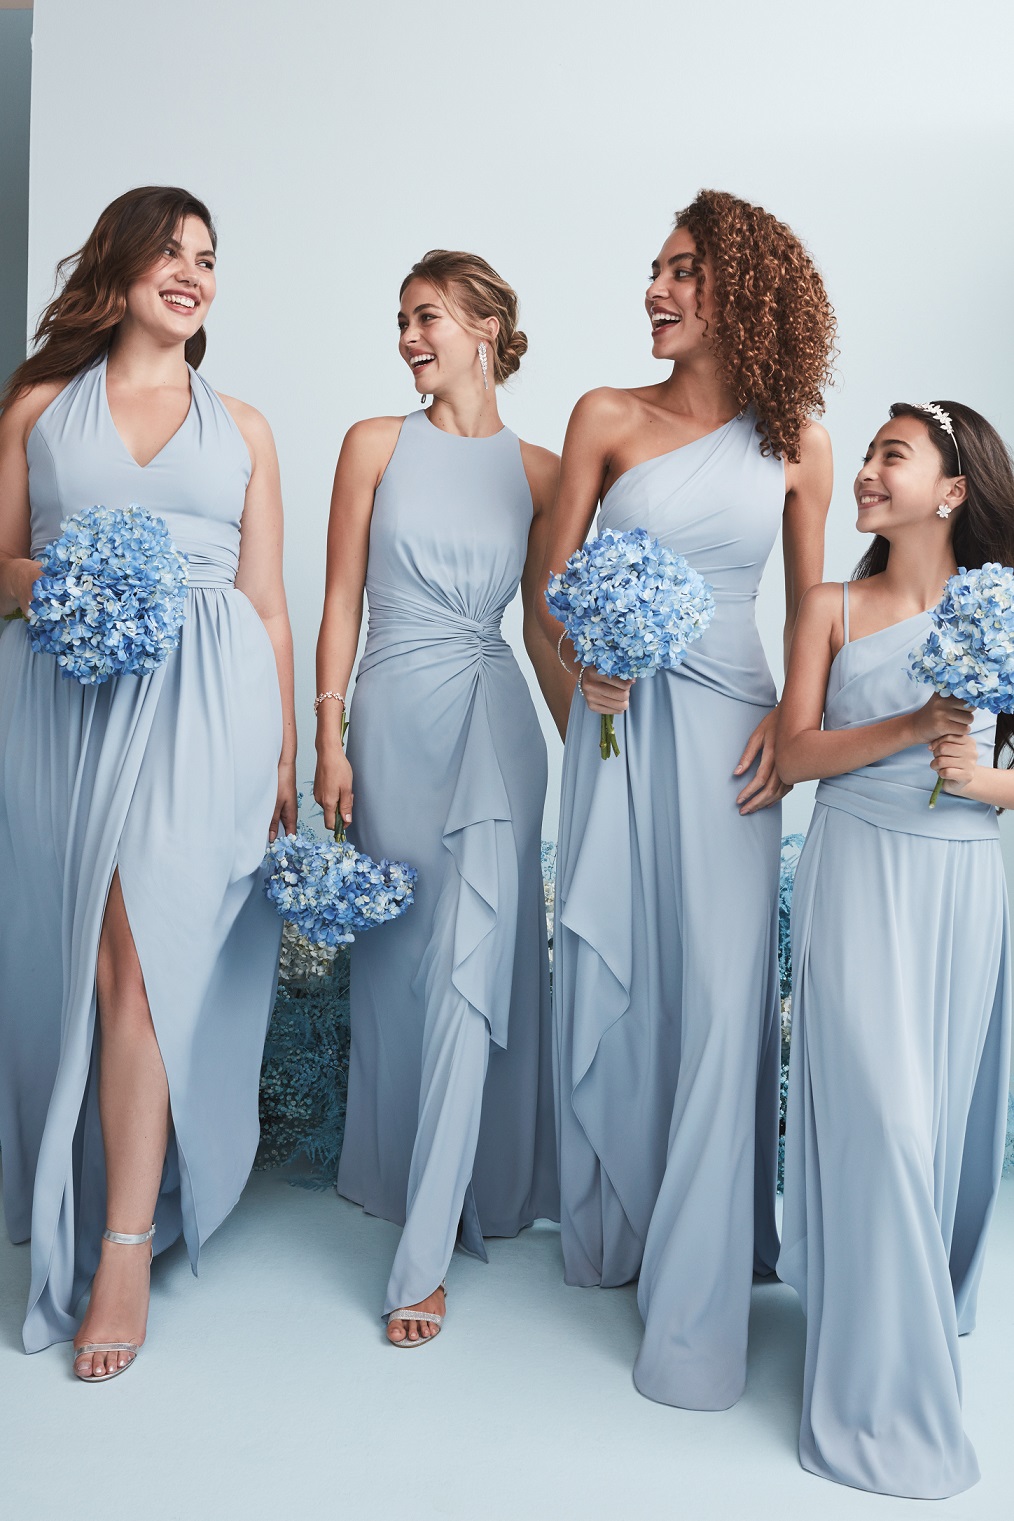 New Color Alert: Dusty Blue Bridesmaid Dresses - David's Bridal Blog